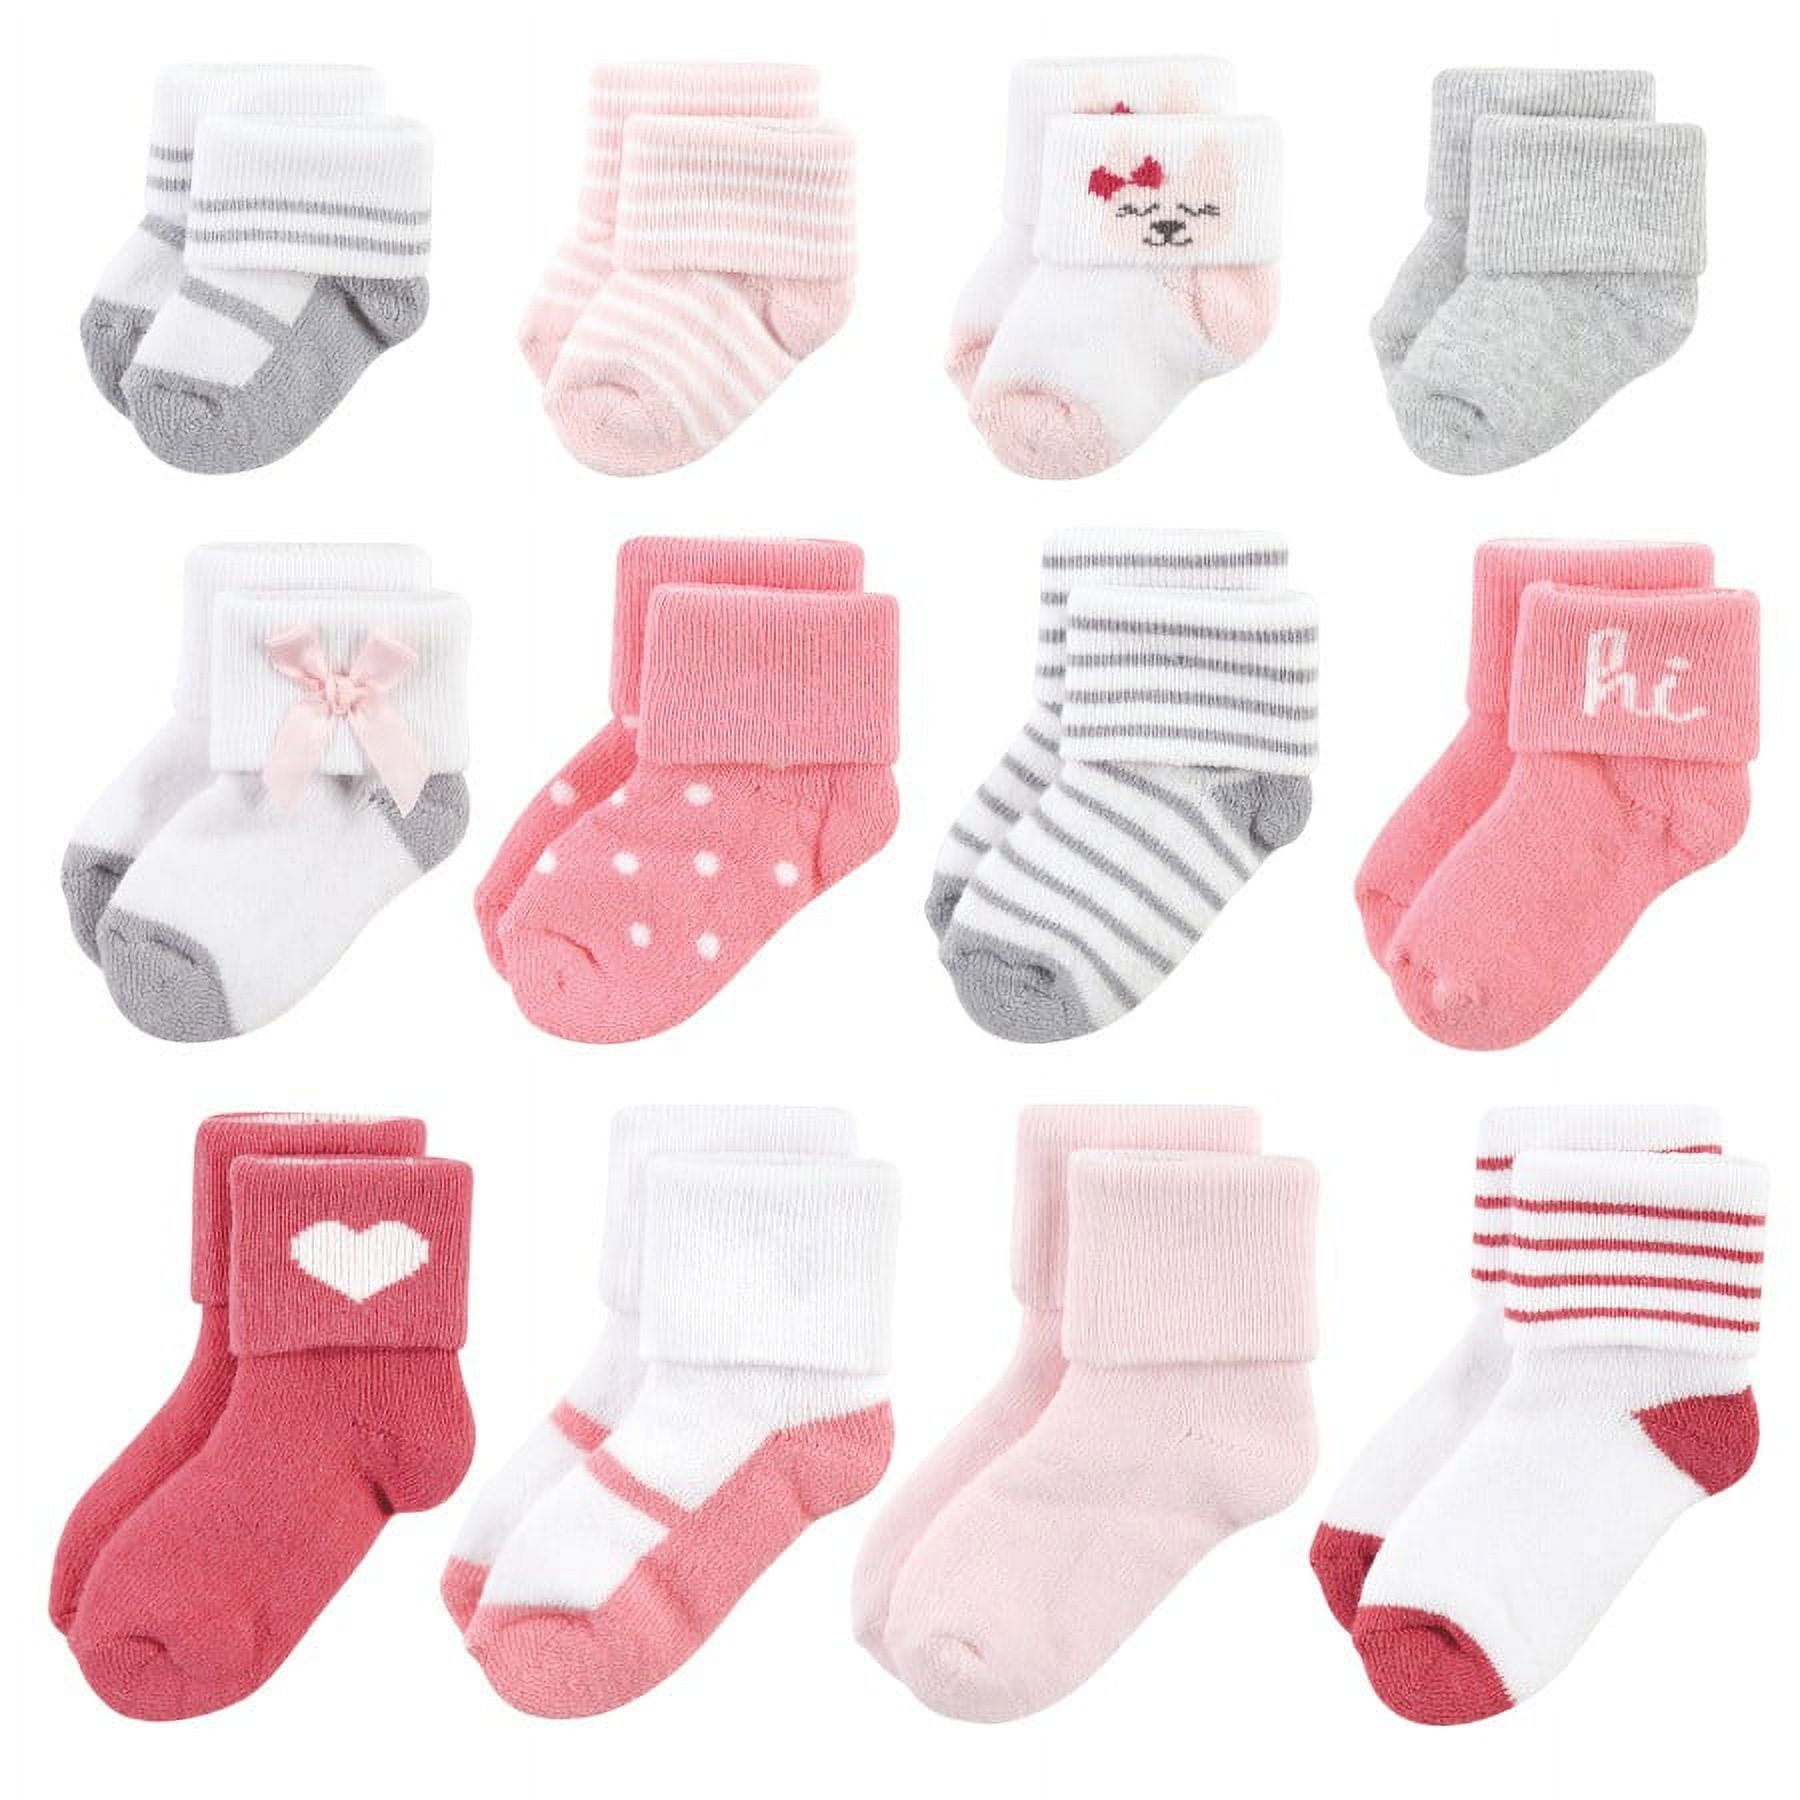 Hudson Baby Infant Girls Grow With Me Socks 12pk, Kitten, 0-24 Months ...